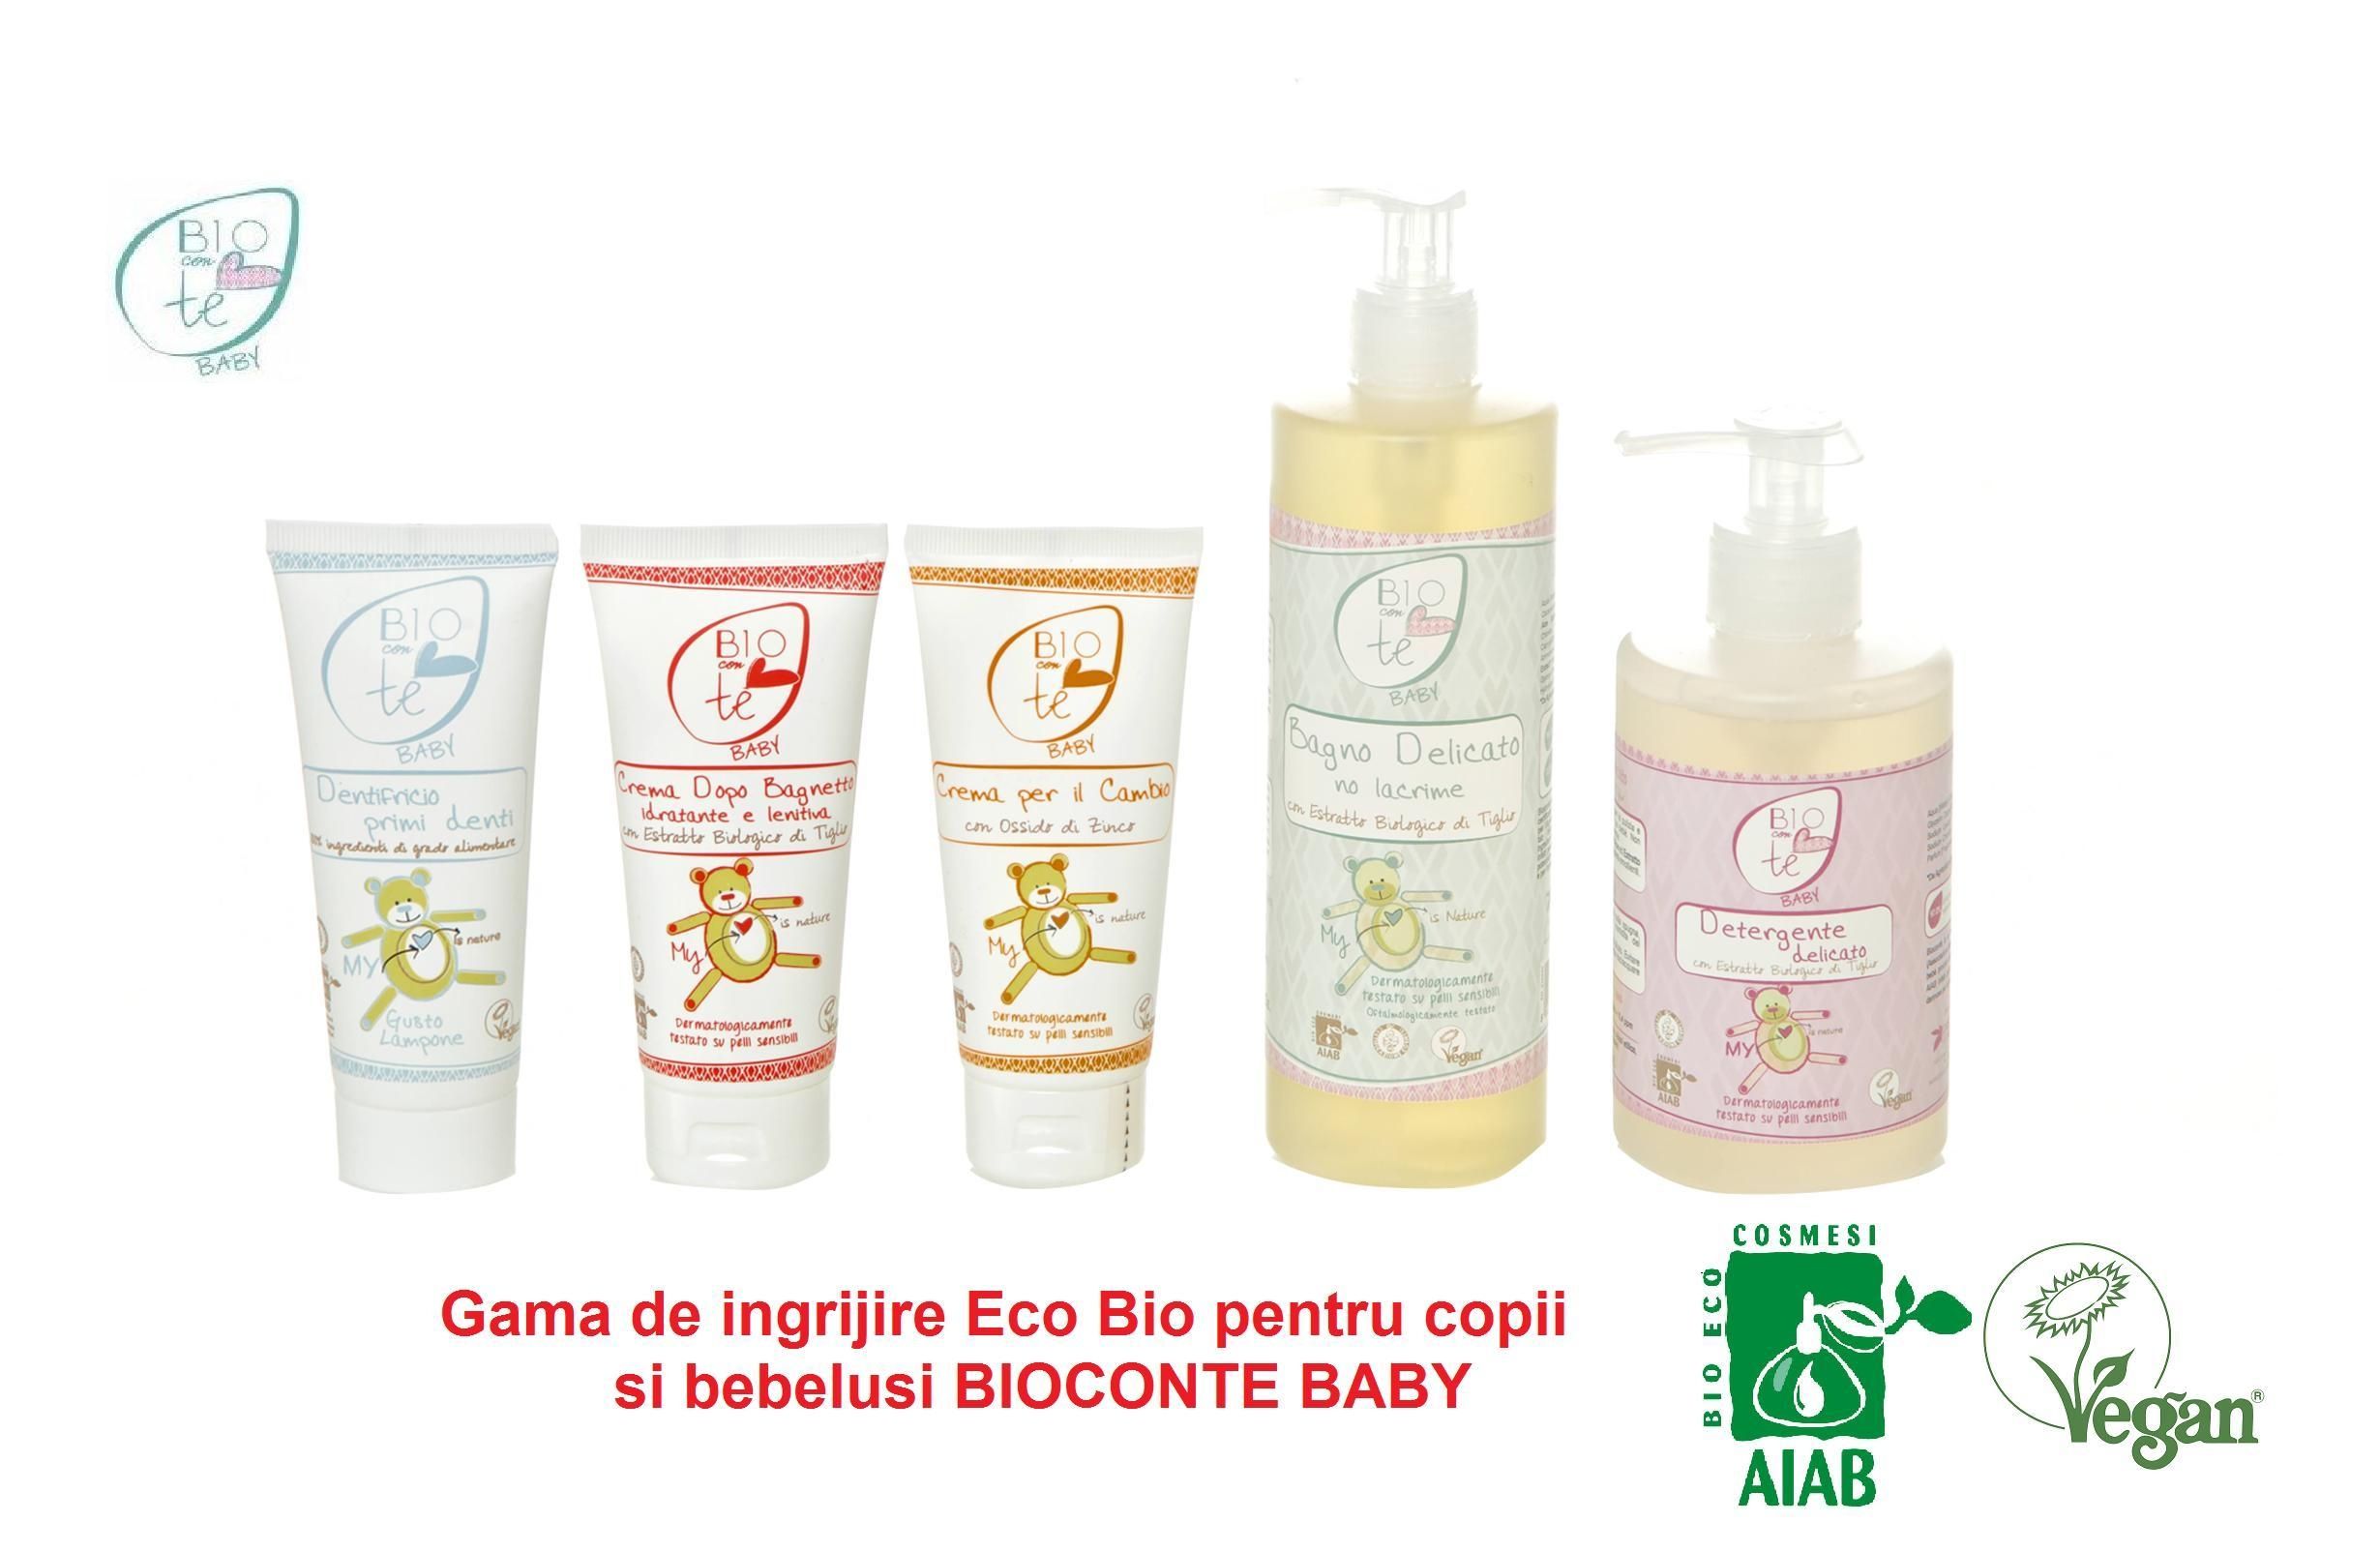 Bioconte Baby